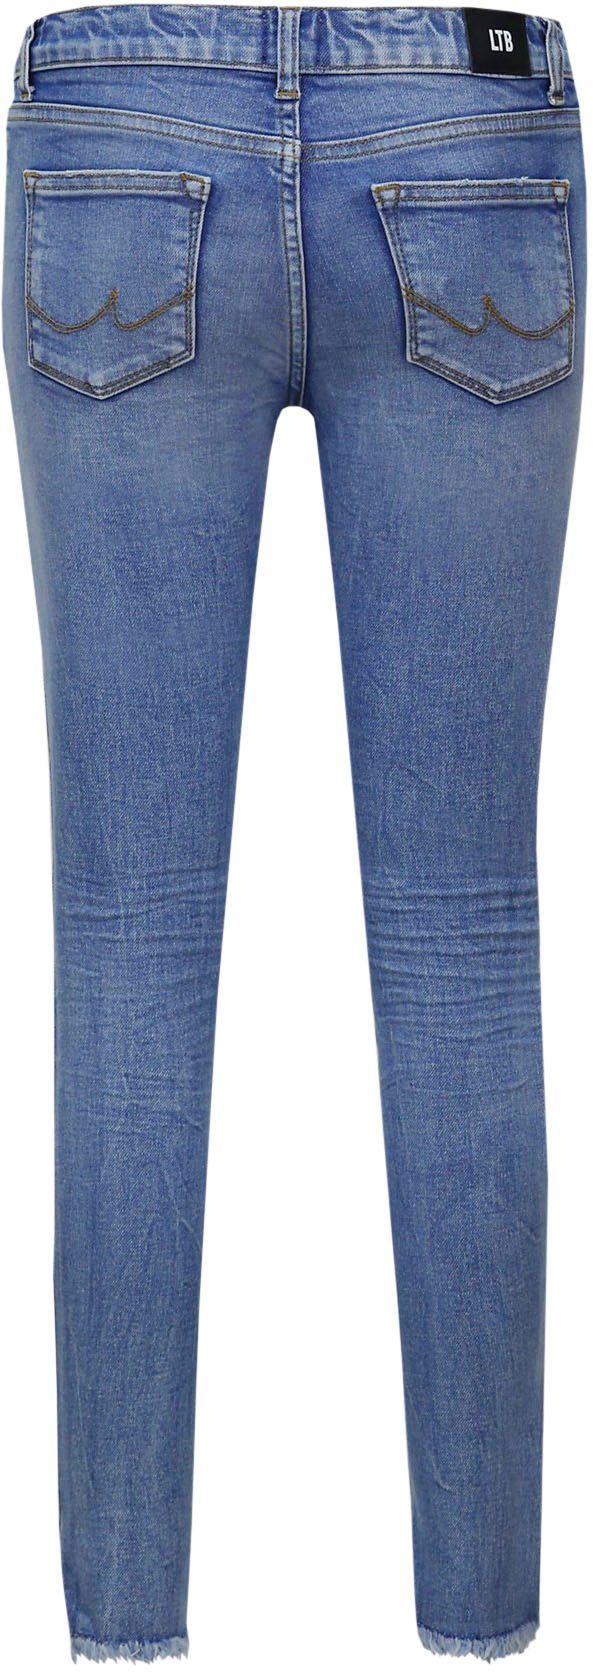 LTB Skinny-fit-Jeans wash mit ofra Destroyed-Effekten, GIRLS AMY for